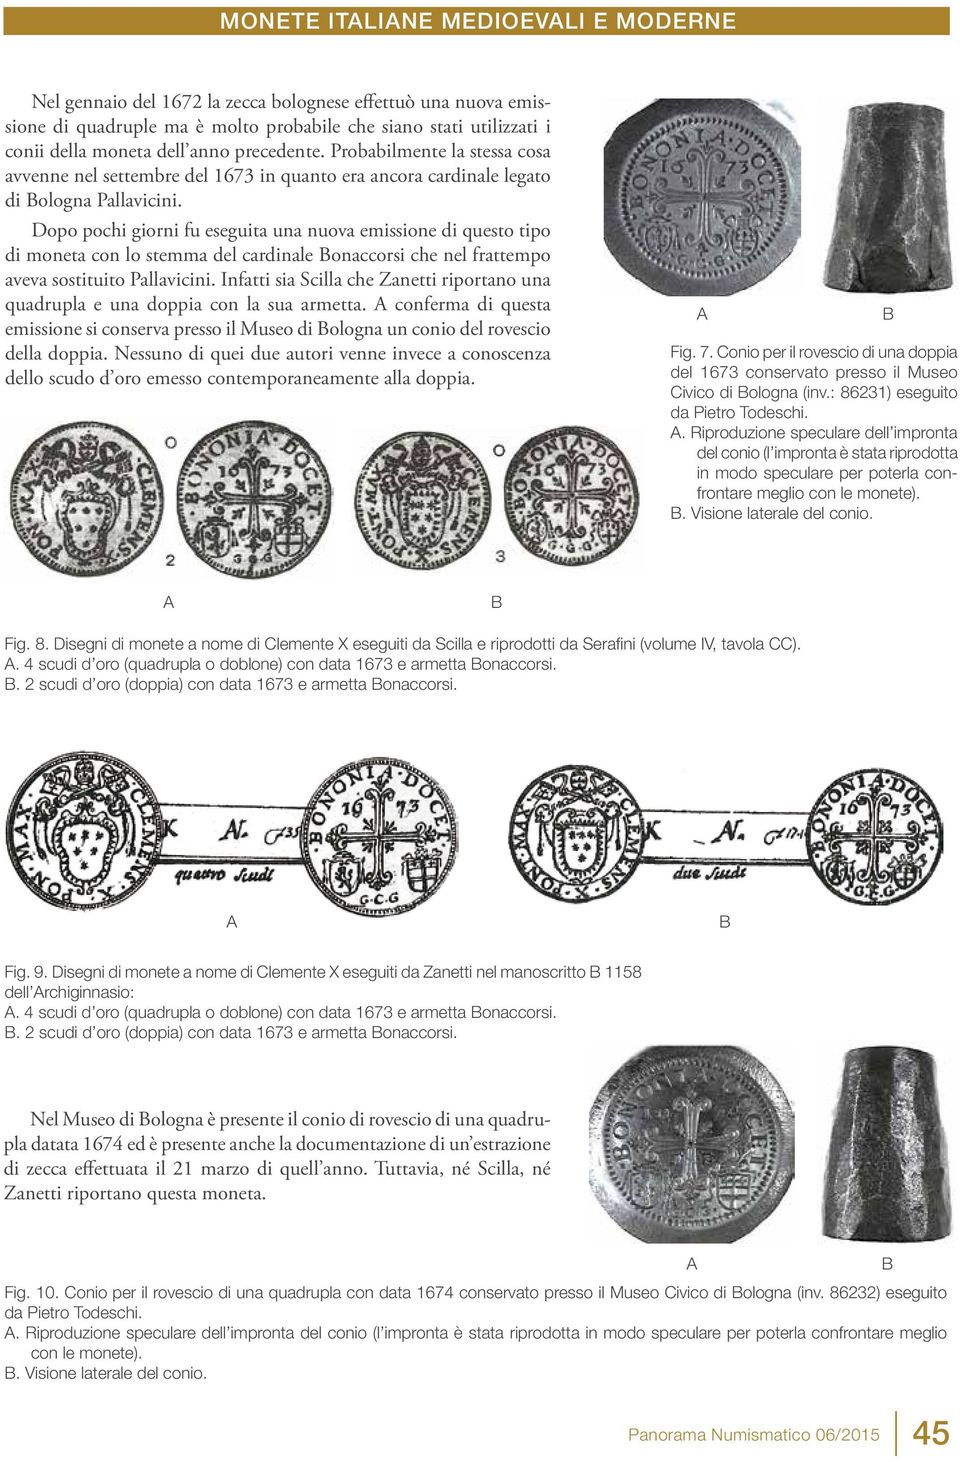 Dopo pochi giorni fu eseguita una nuova emissione di questo tipo di moneta con lo stemma del cardinale onaccorsi che nel frattempo aveva sostituito Pallavicini.